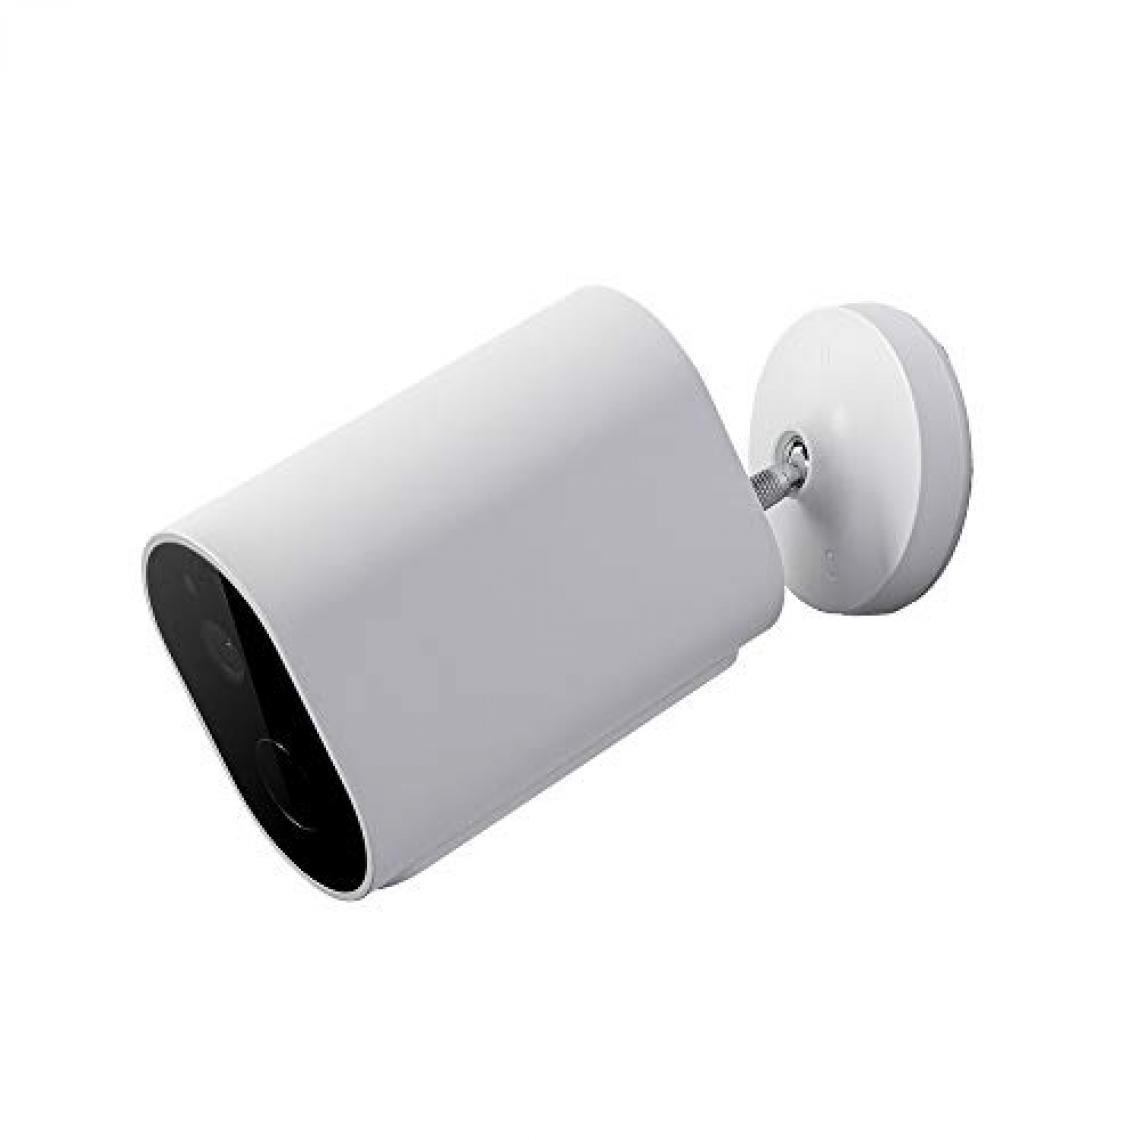 XIAOMI - Caméra IP extérieur IMI EC2 Full HD IR (Blanc) - Caméra de surveillance connectée